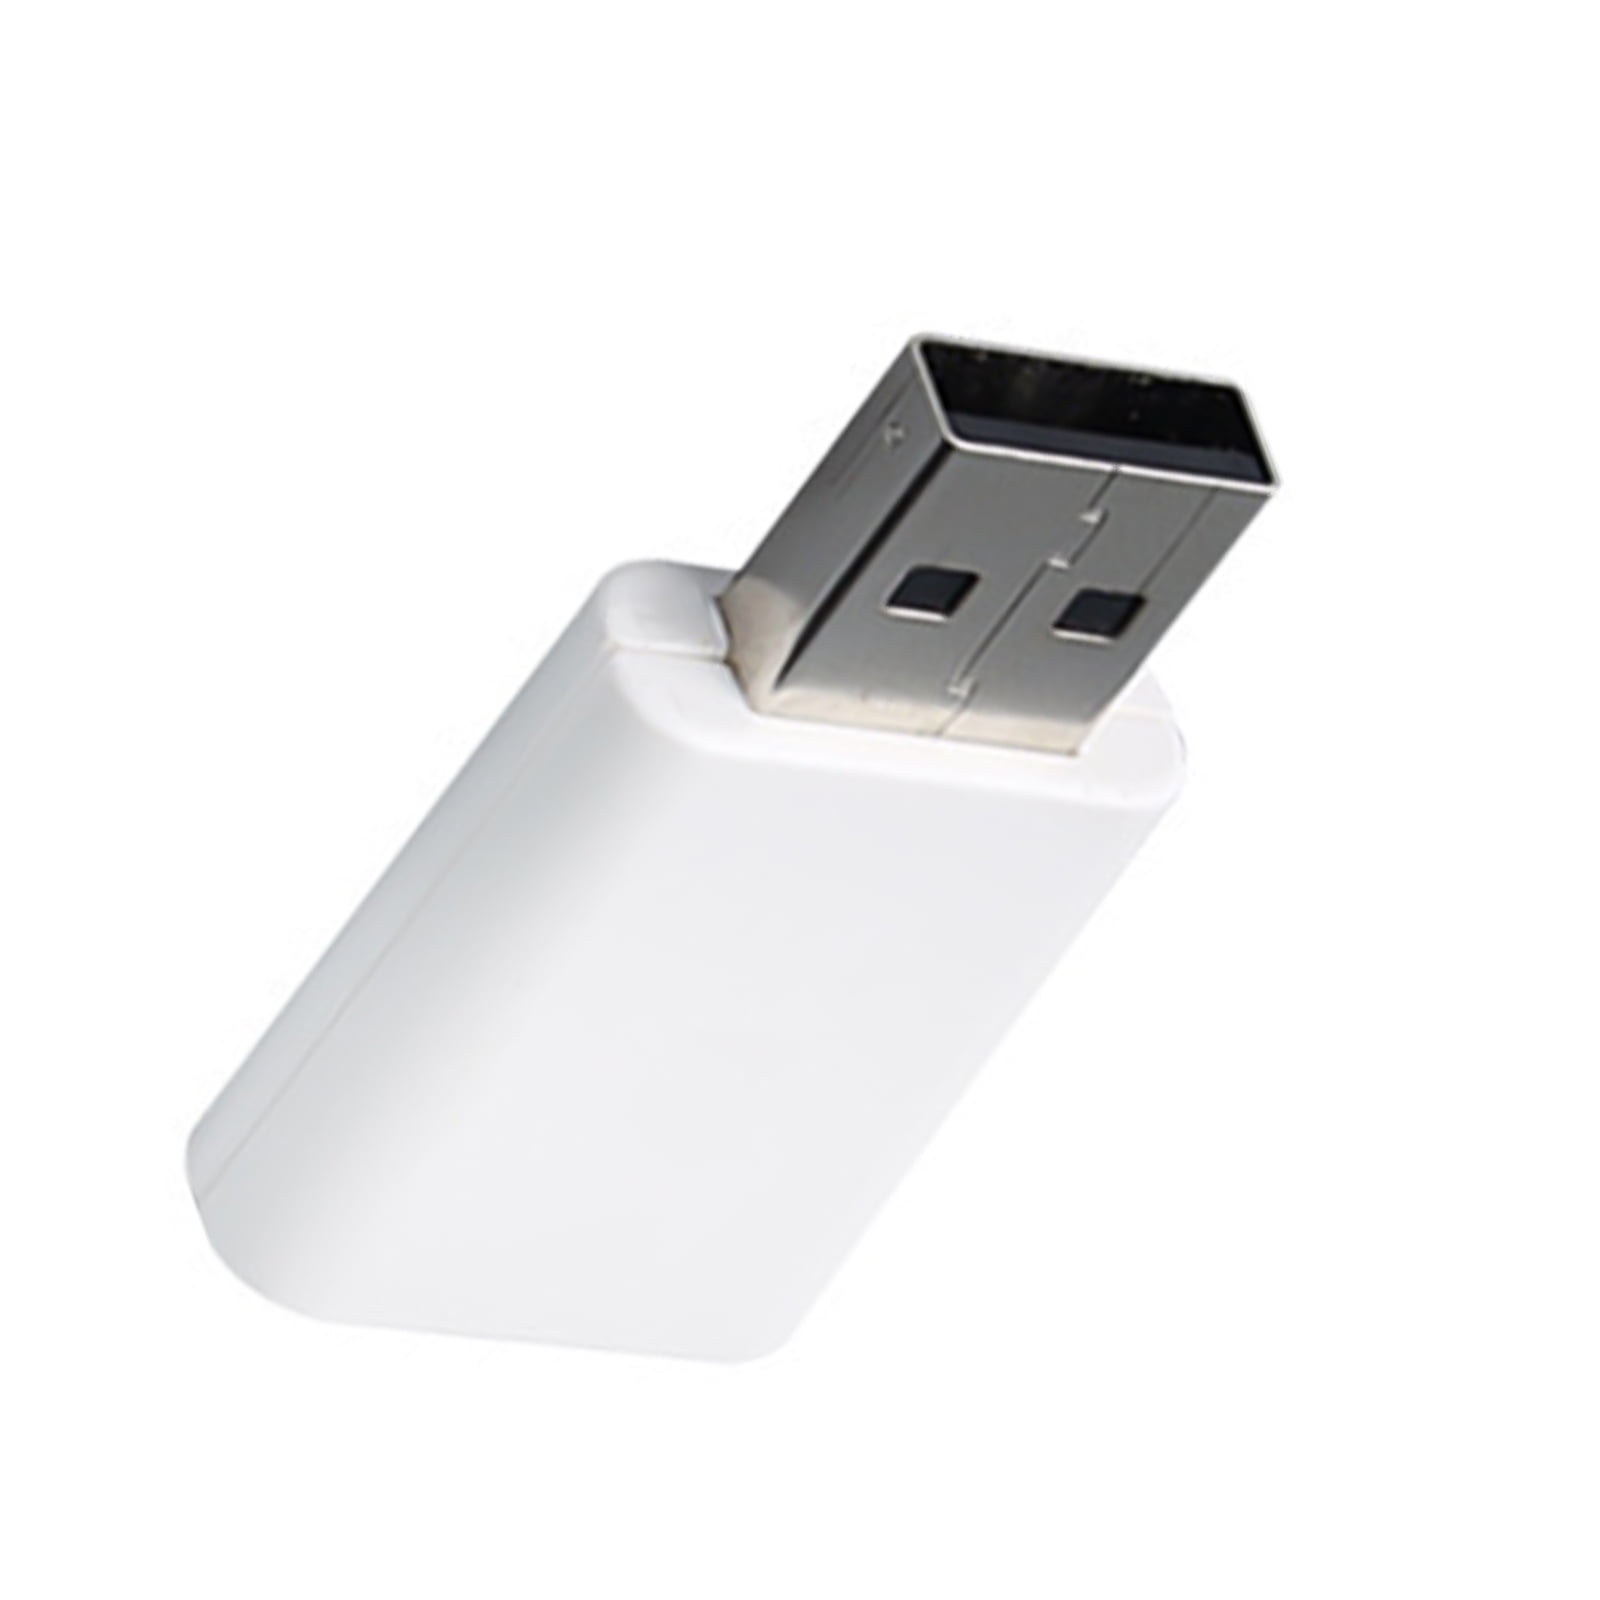 ZigBee 3.0 Signal Repeater USB Extender – Serenib